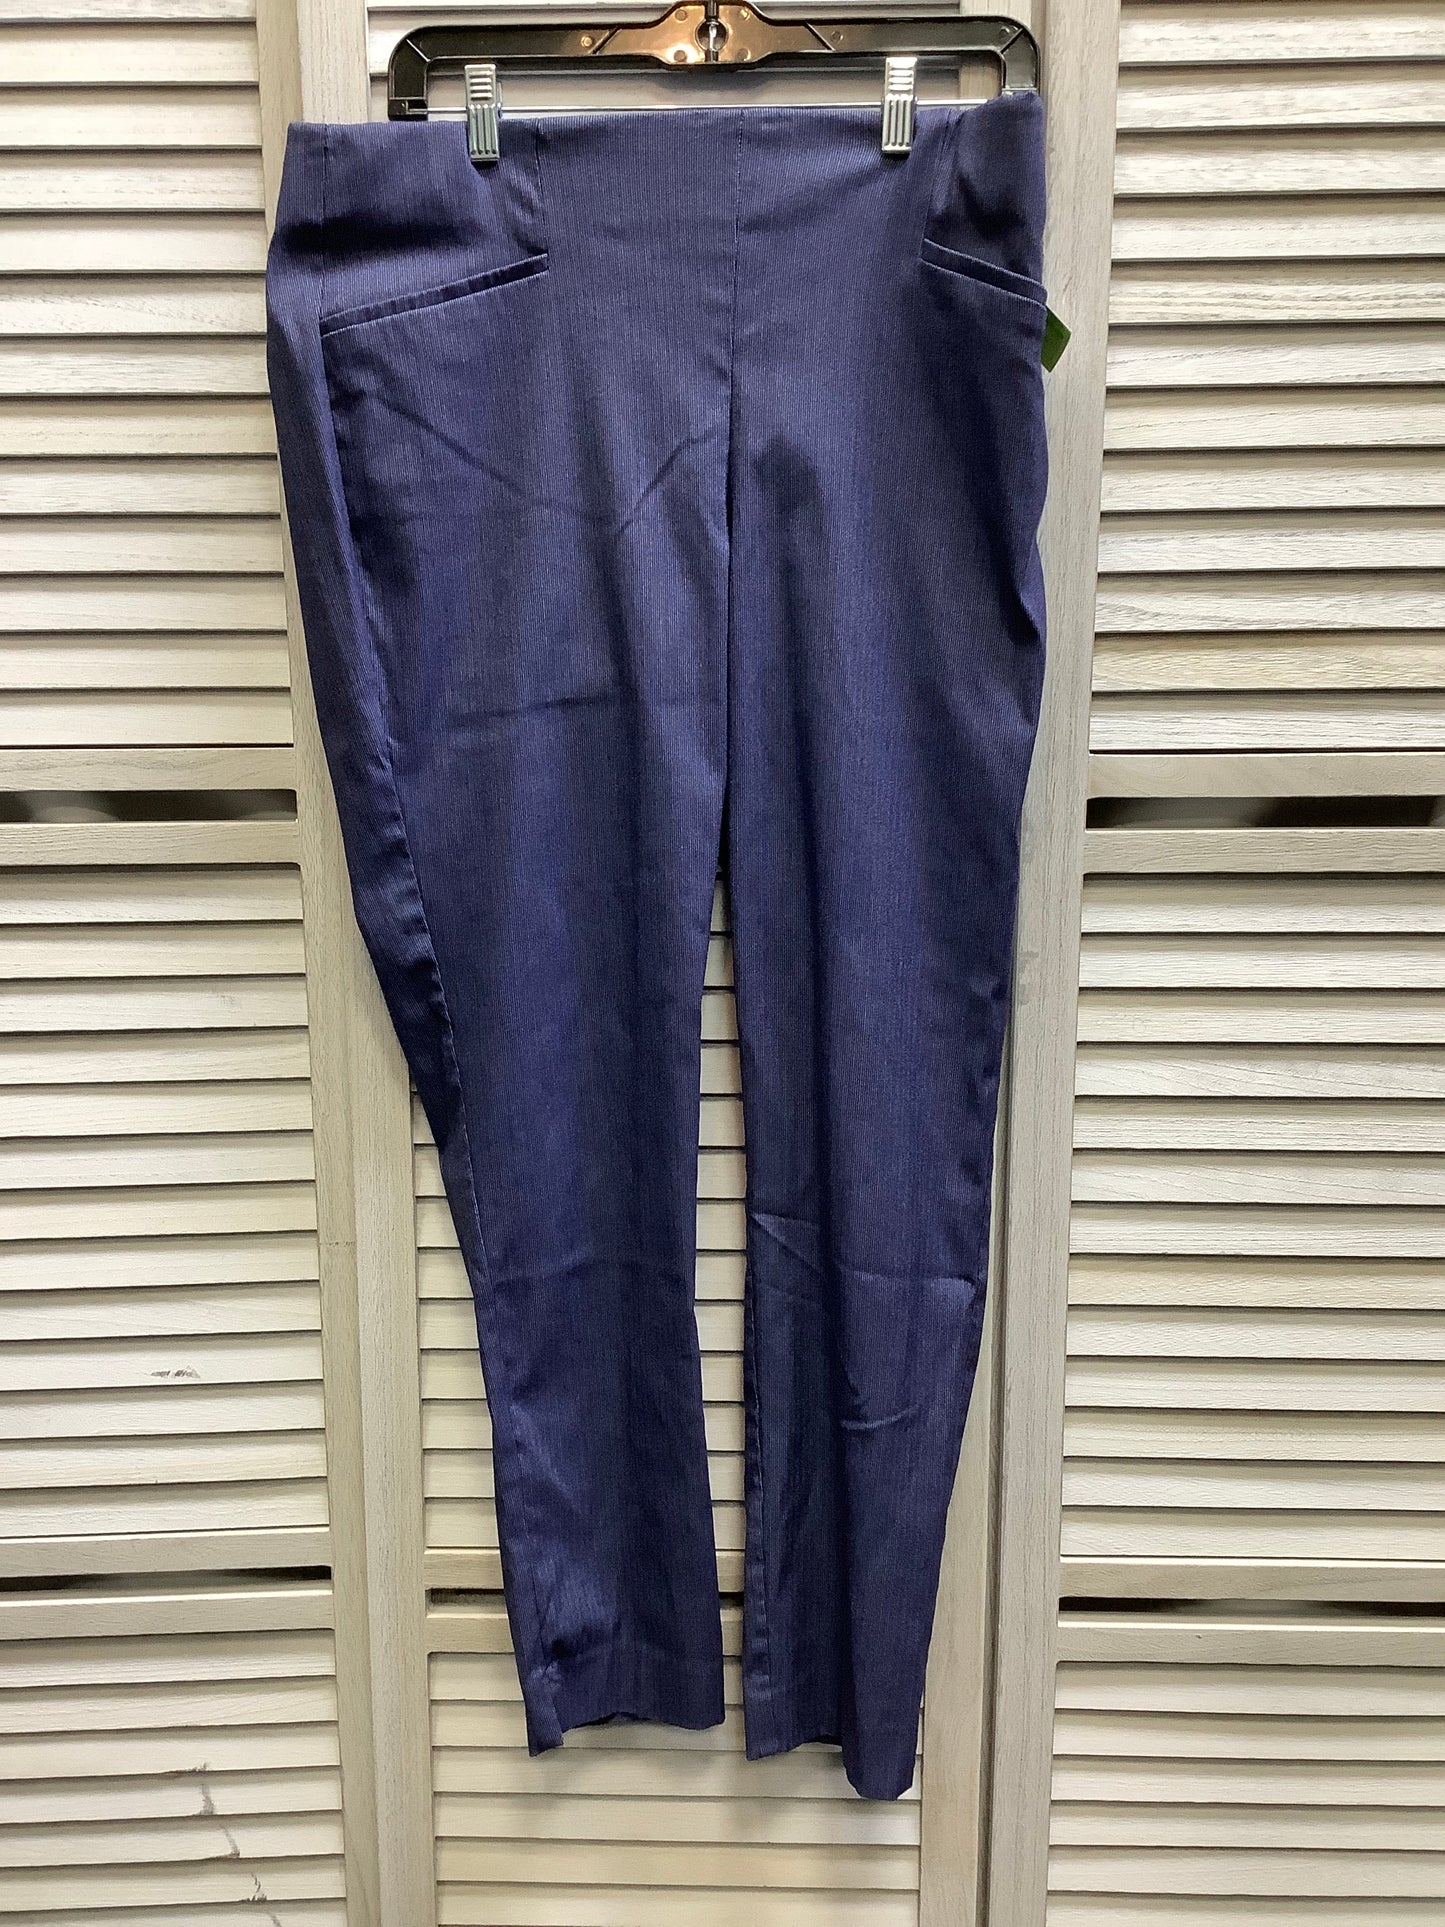 Blue Pants Dress Van Heusen, Size 12